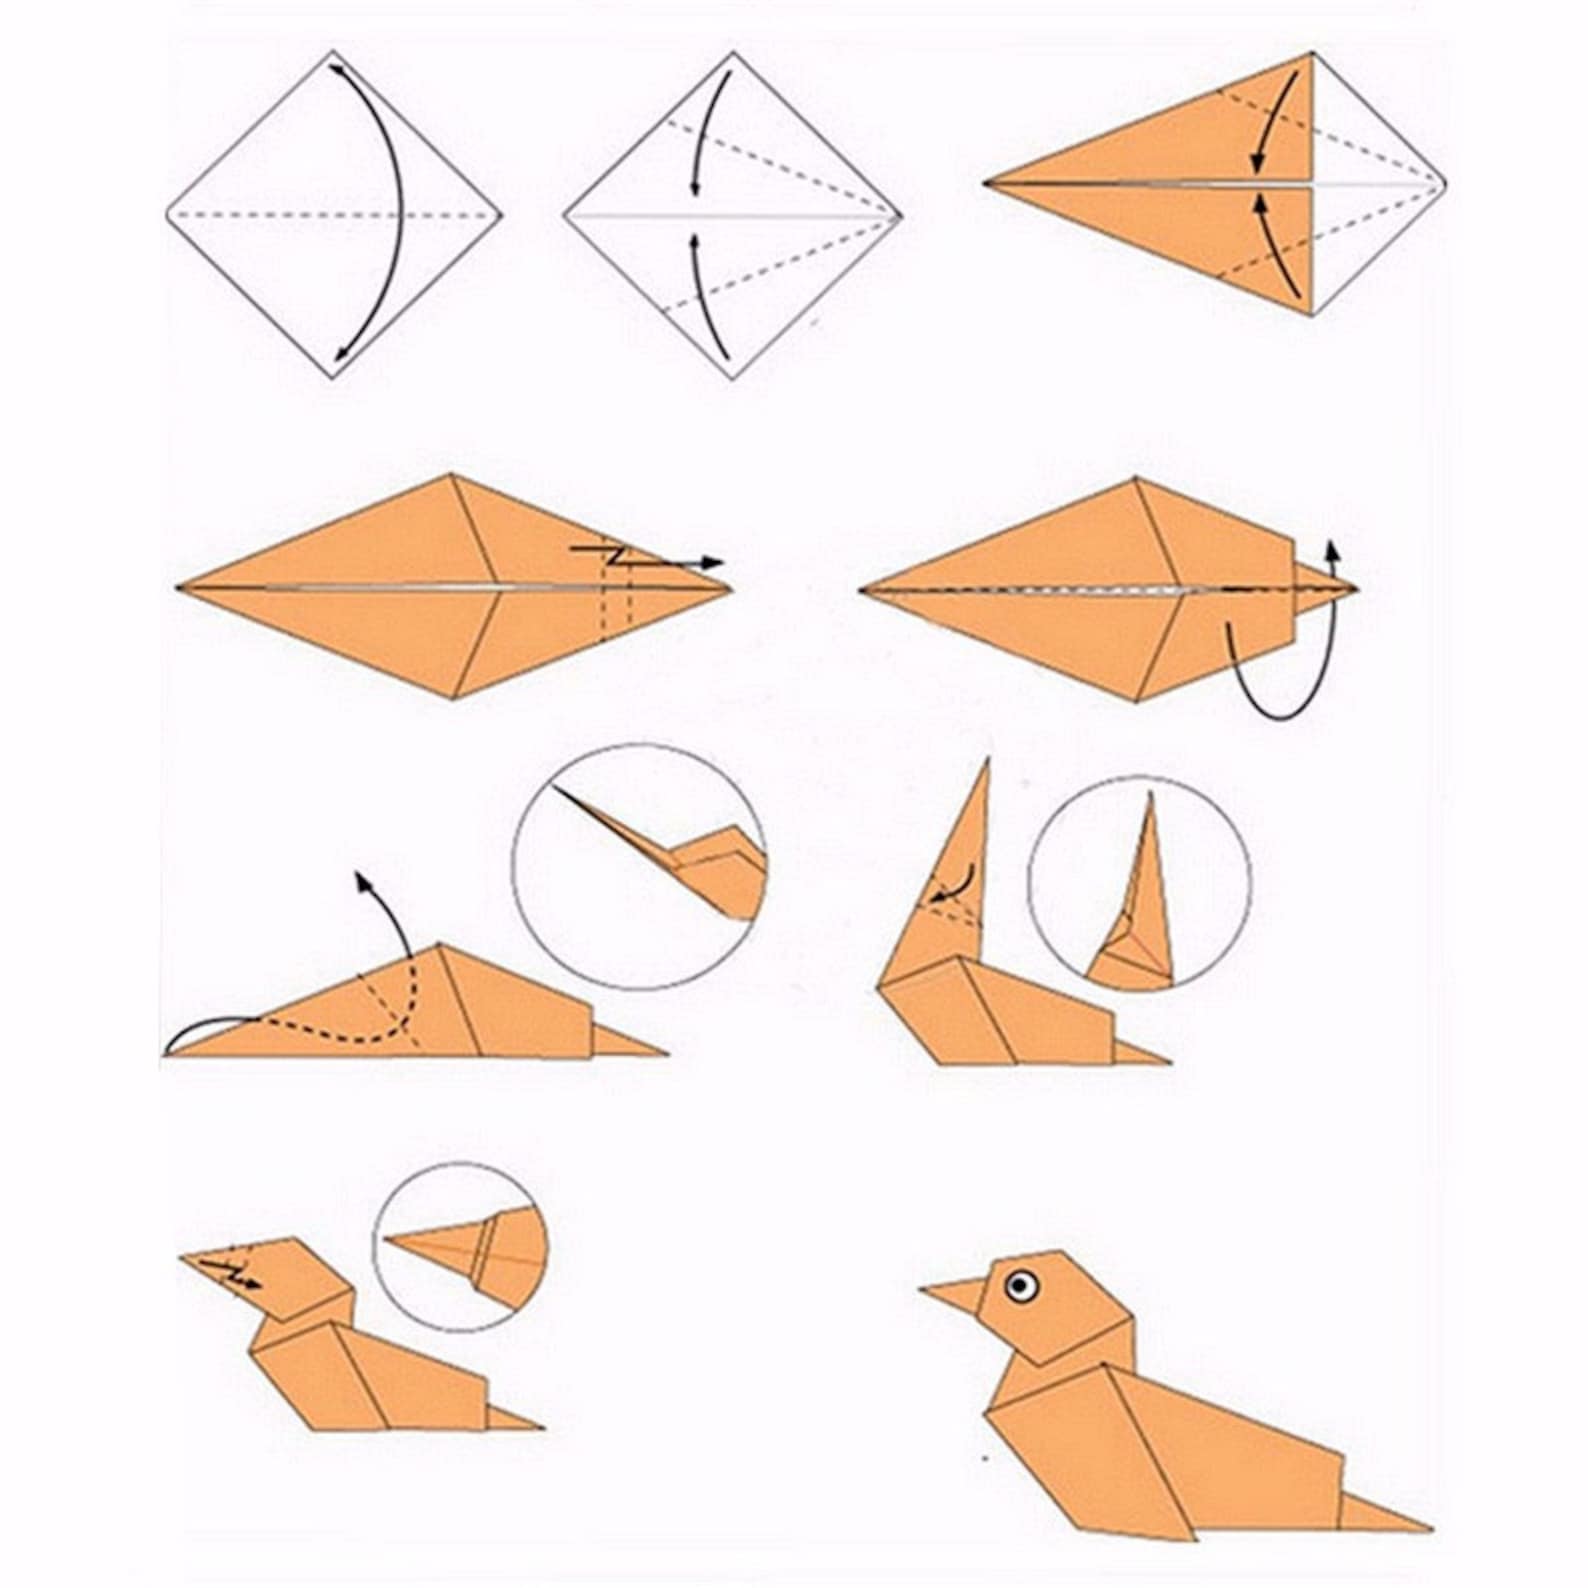 Как сделать маленький оригами. Схема как делать оригами. Как сложить оригами из бумаги для начинающих. Схемы оригами легкие пошагово. Оригами из бумаги для начинающих животные пошагово схемы.